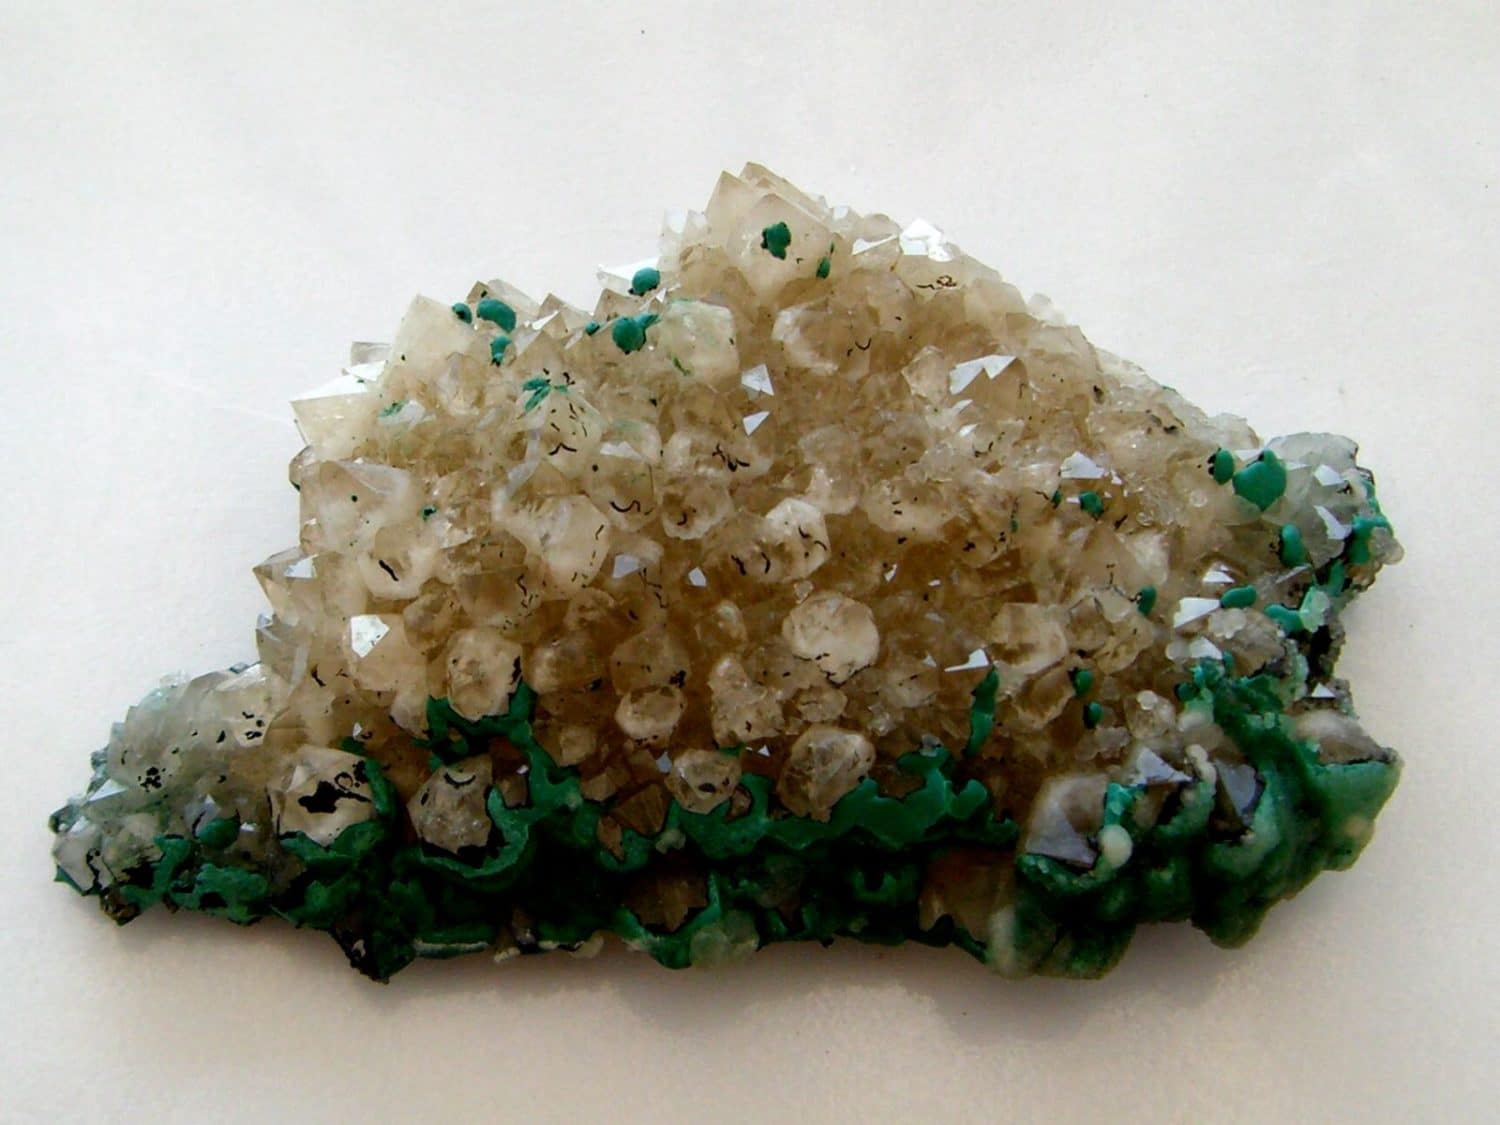 Malachite botryoïdale sur cristaux de quartz de Bouche-Payrol (Aveyron).